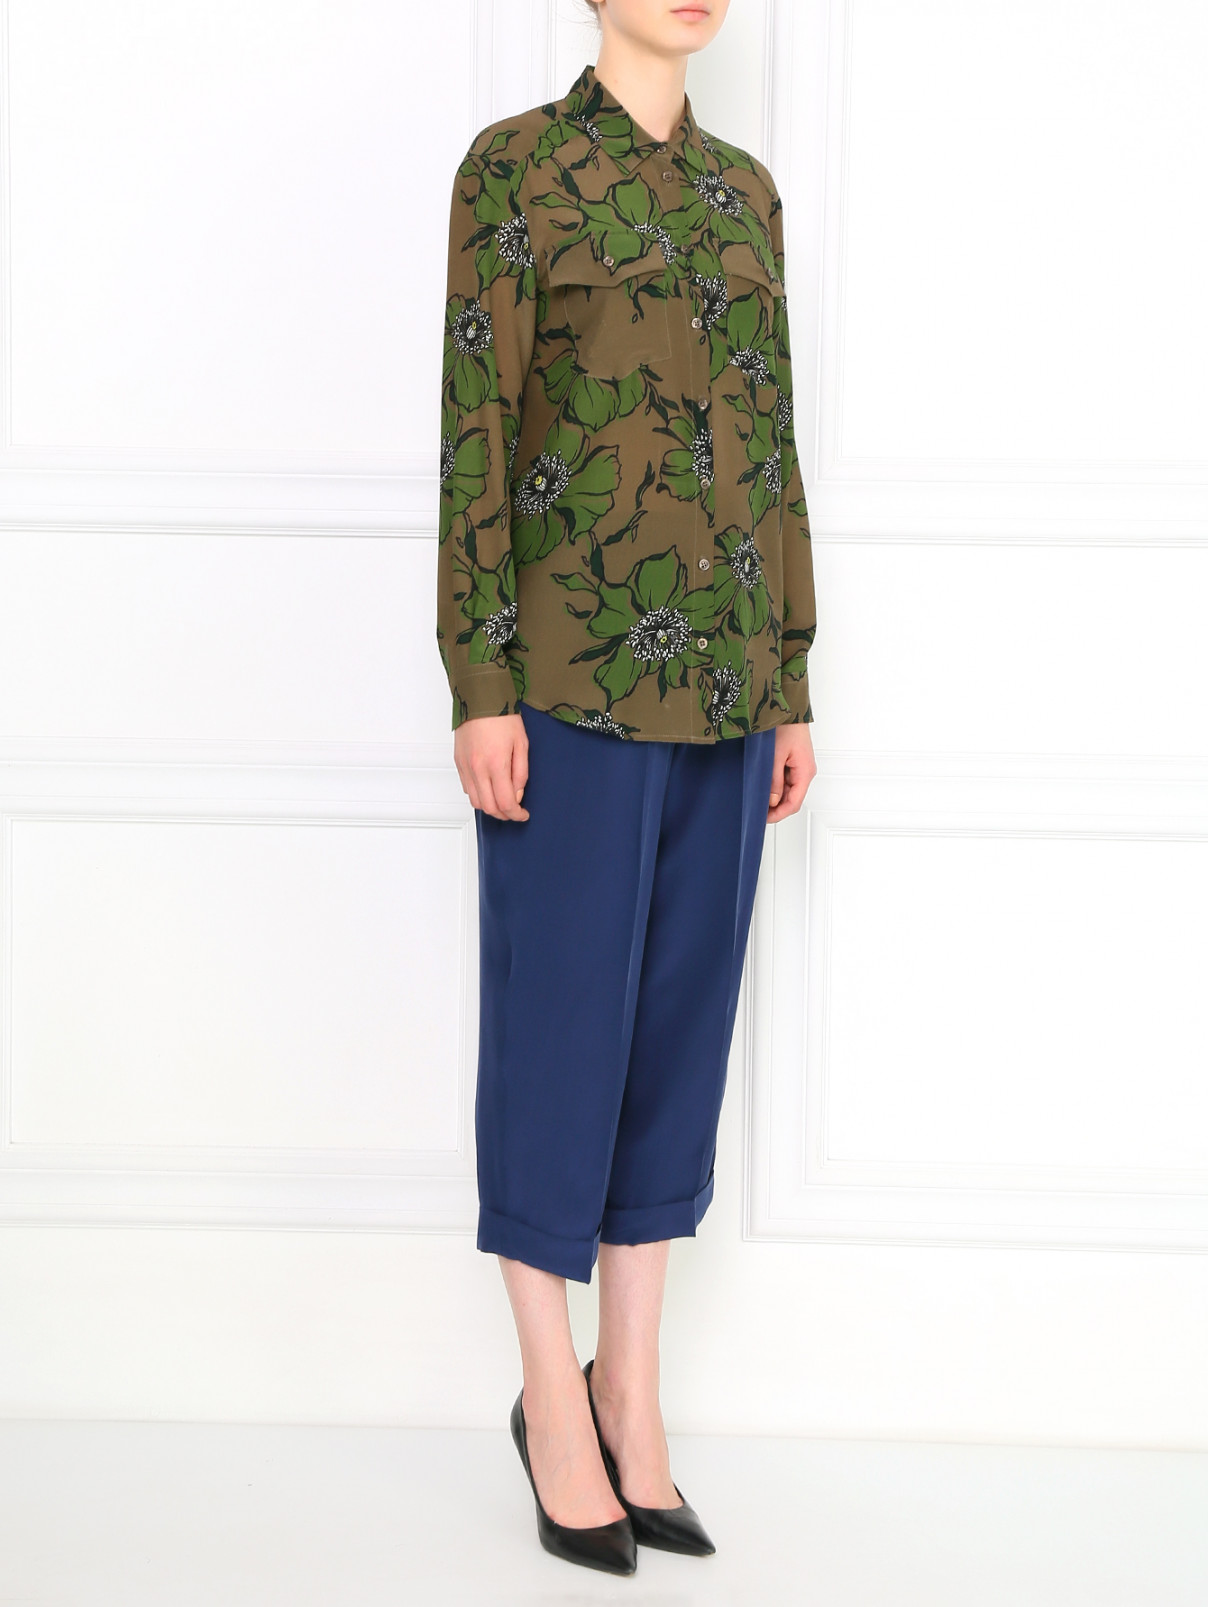 Блуза из шелка с цветочным узором Sportmax Code  –  Модель Общий вид  – Цвет:  Зеленый